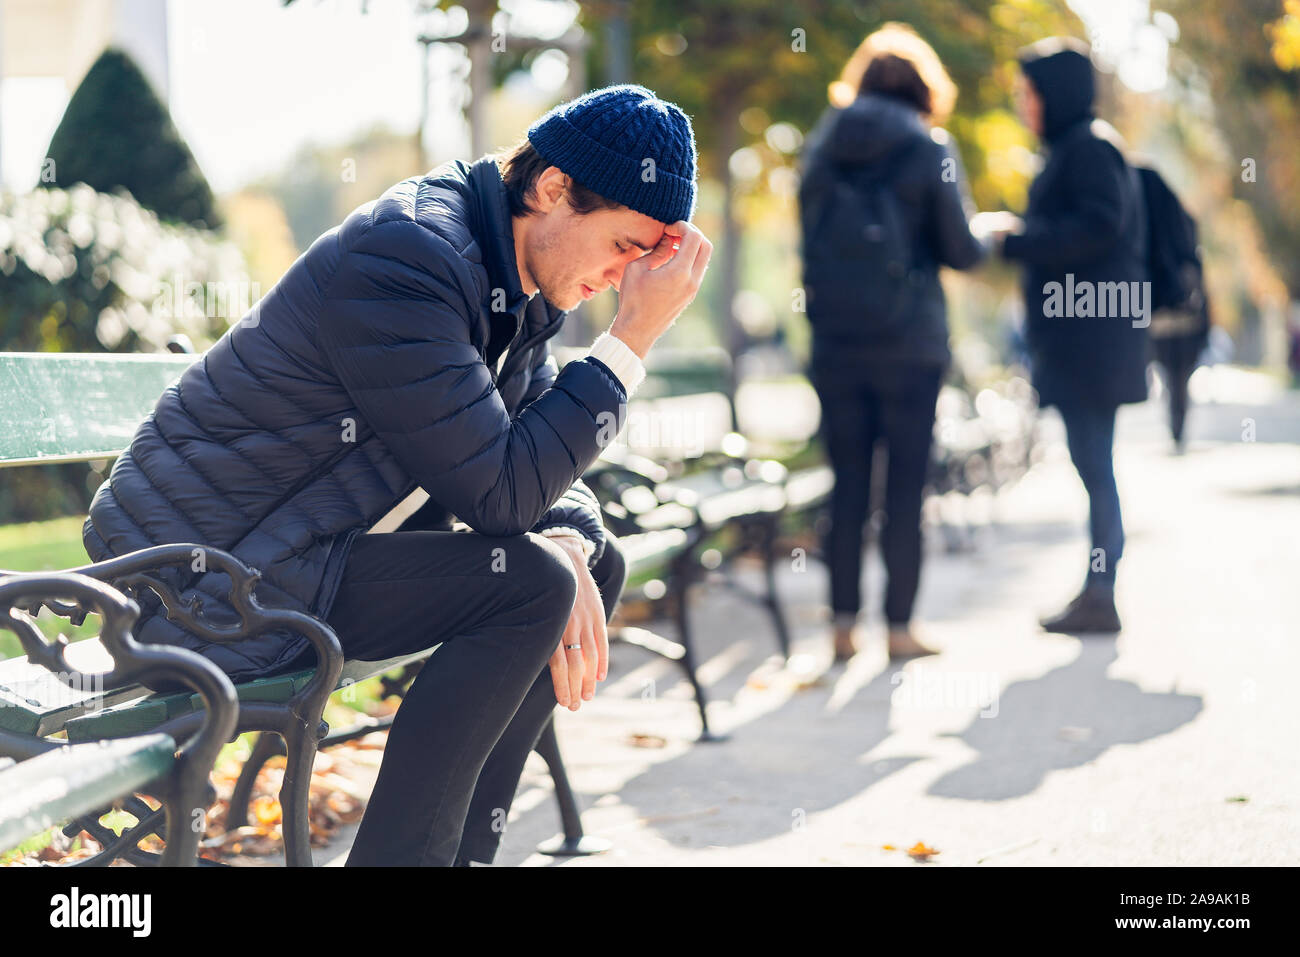 Junge besorgt, der Mensch ist in seinem Gesicht. Er sitzt auf einer Bank während der sonnigen Herbsttag. Der Menschen silhuettes im Hintergrund sichtbar. Stockfoto